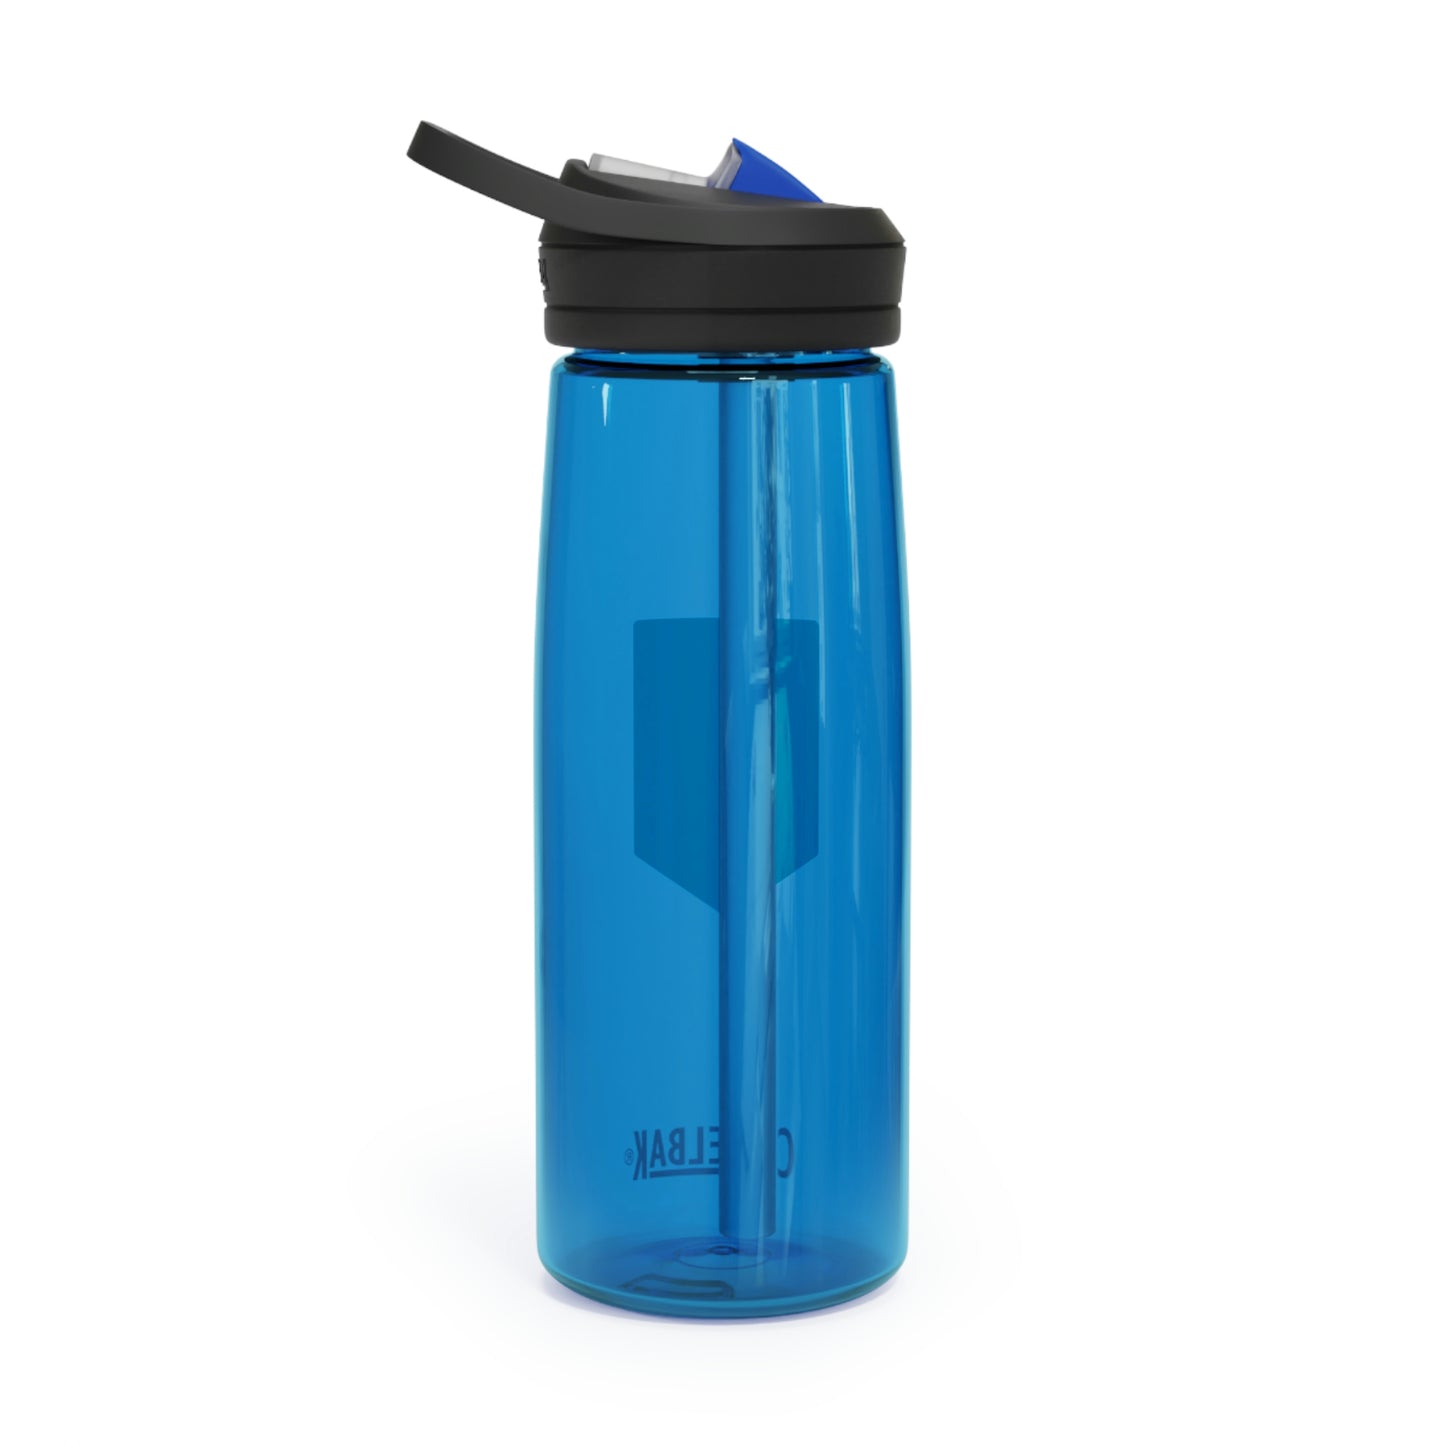 CamelBak Eddy+ Water Bottle - True Blue